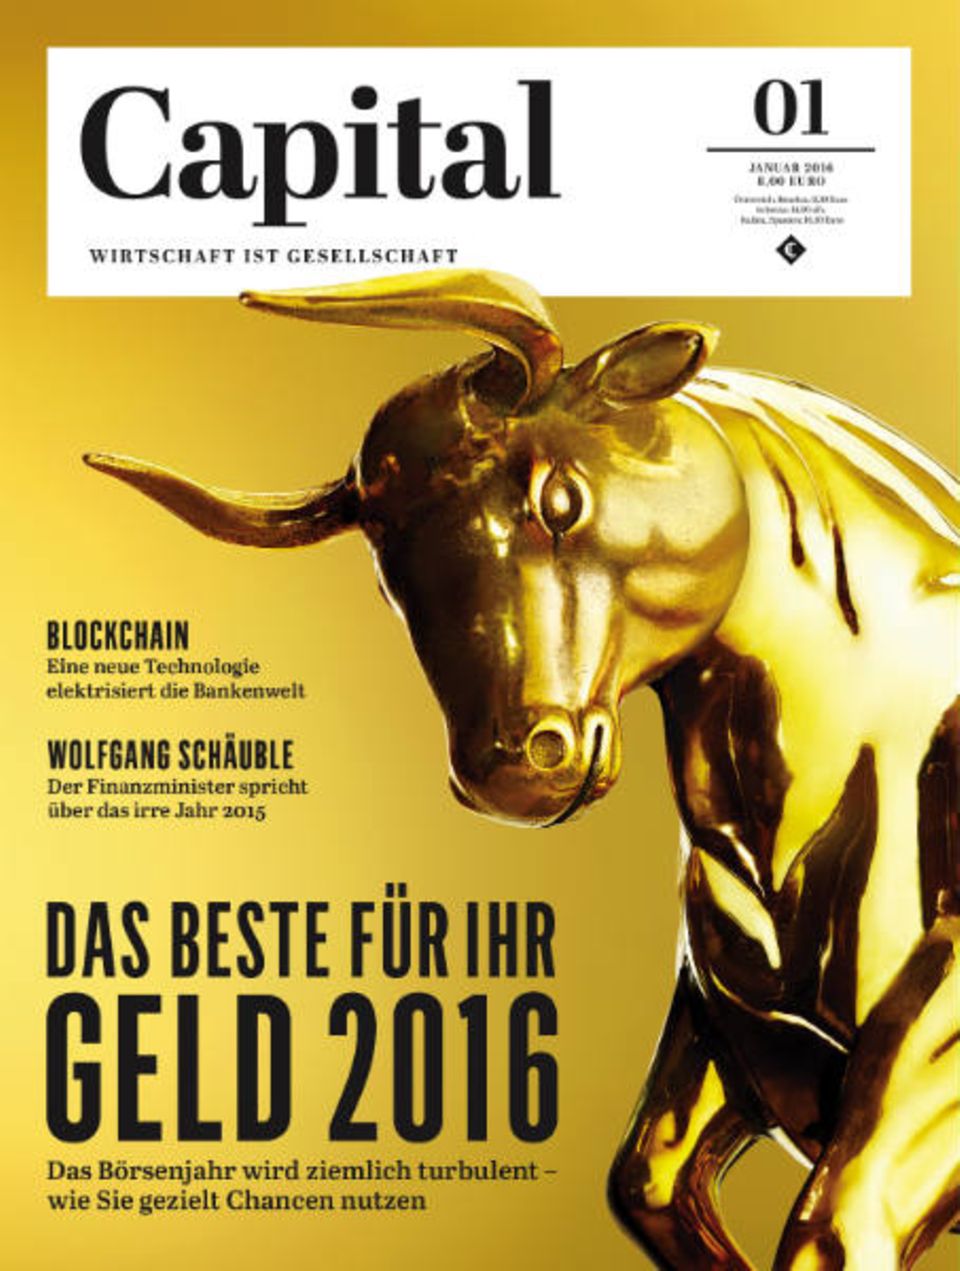 Die neue Capital: Geld-Spezial auf 28 Seiten